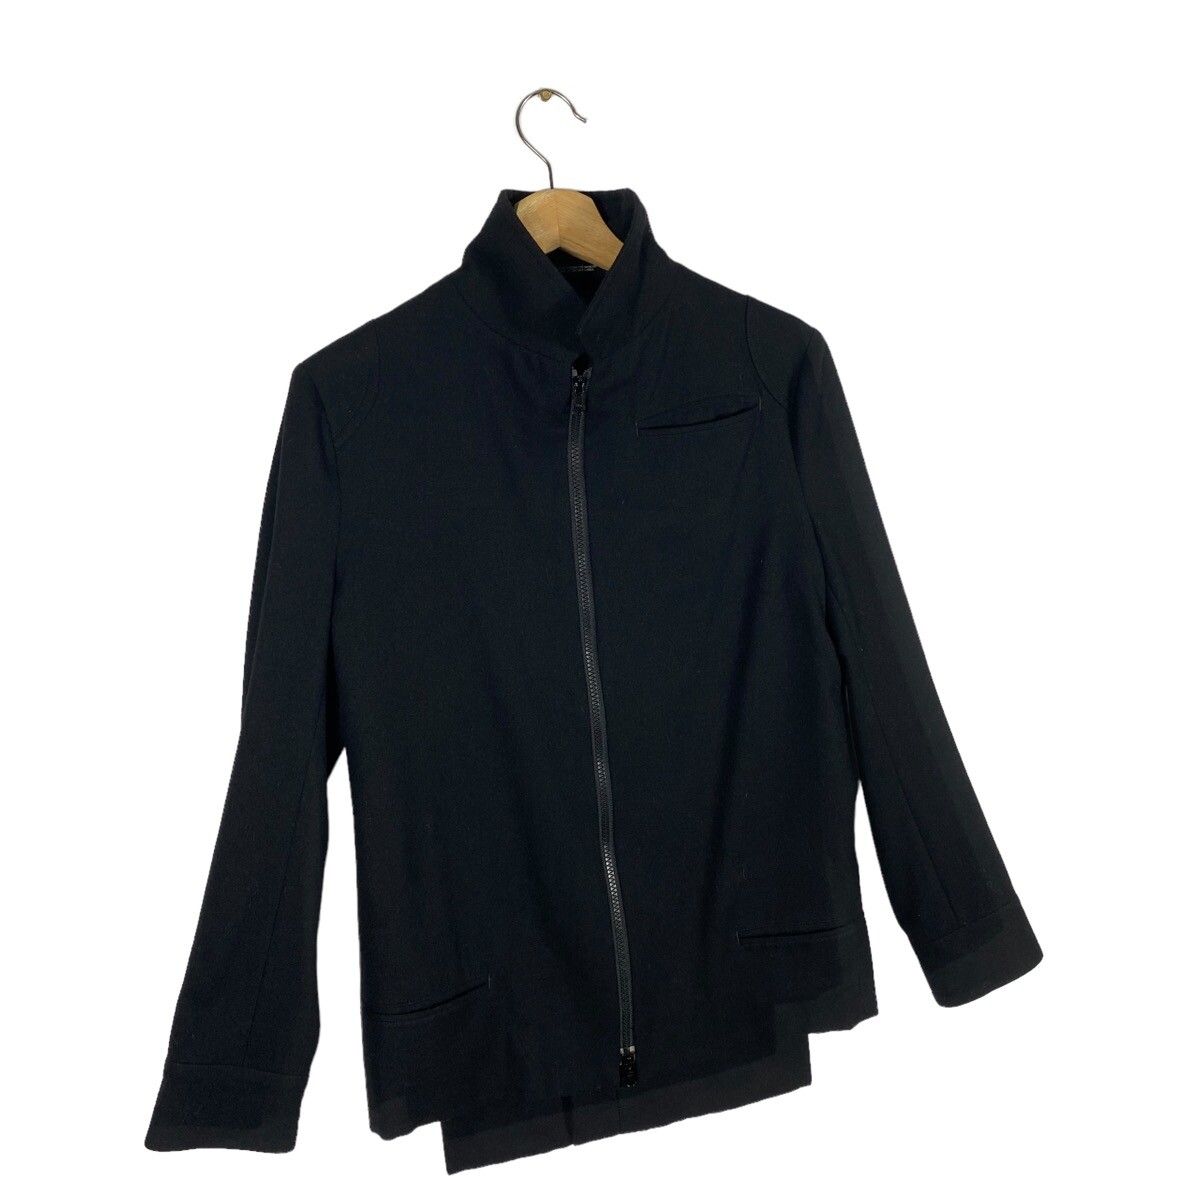 Vintage 90s Y's Yohji Yamamoto Wool Jacket Zipper Size 1 - 3